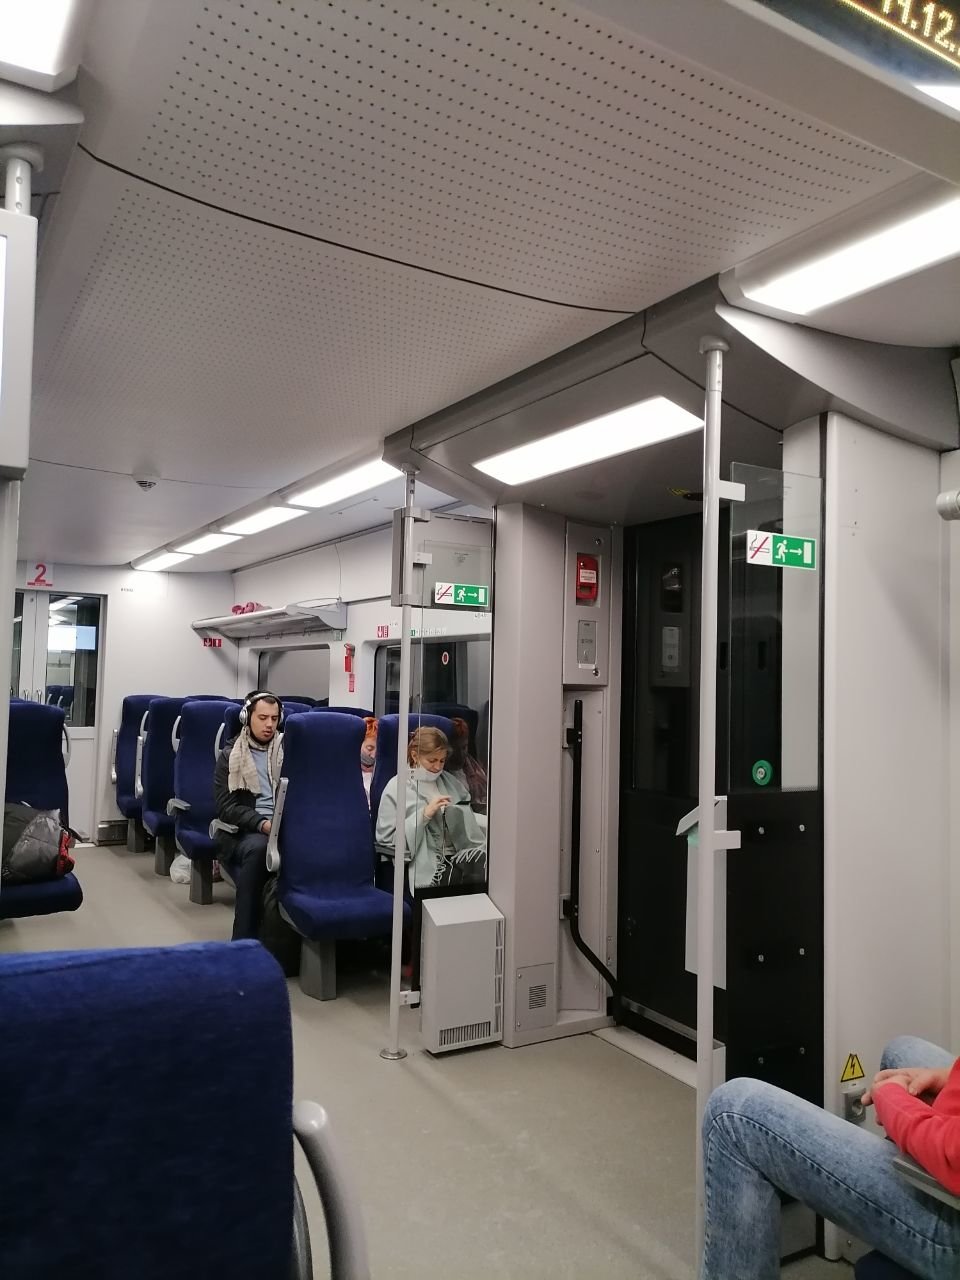 Пассажиры скоростного поезда сидят без света